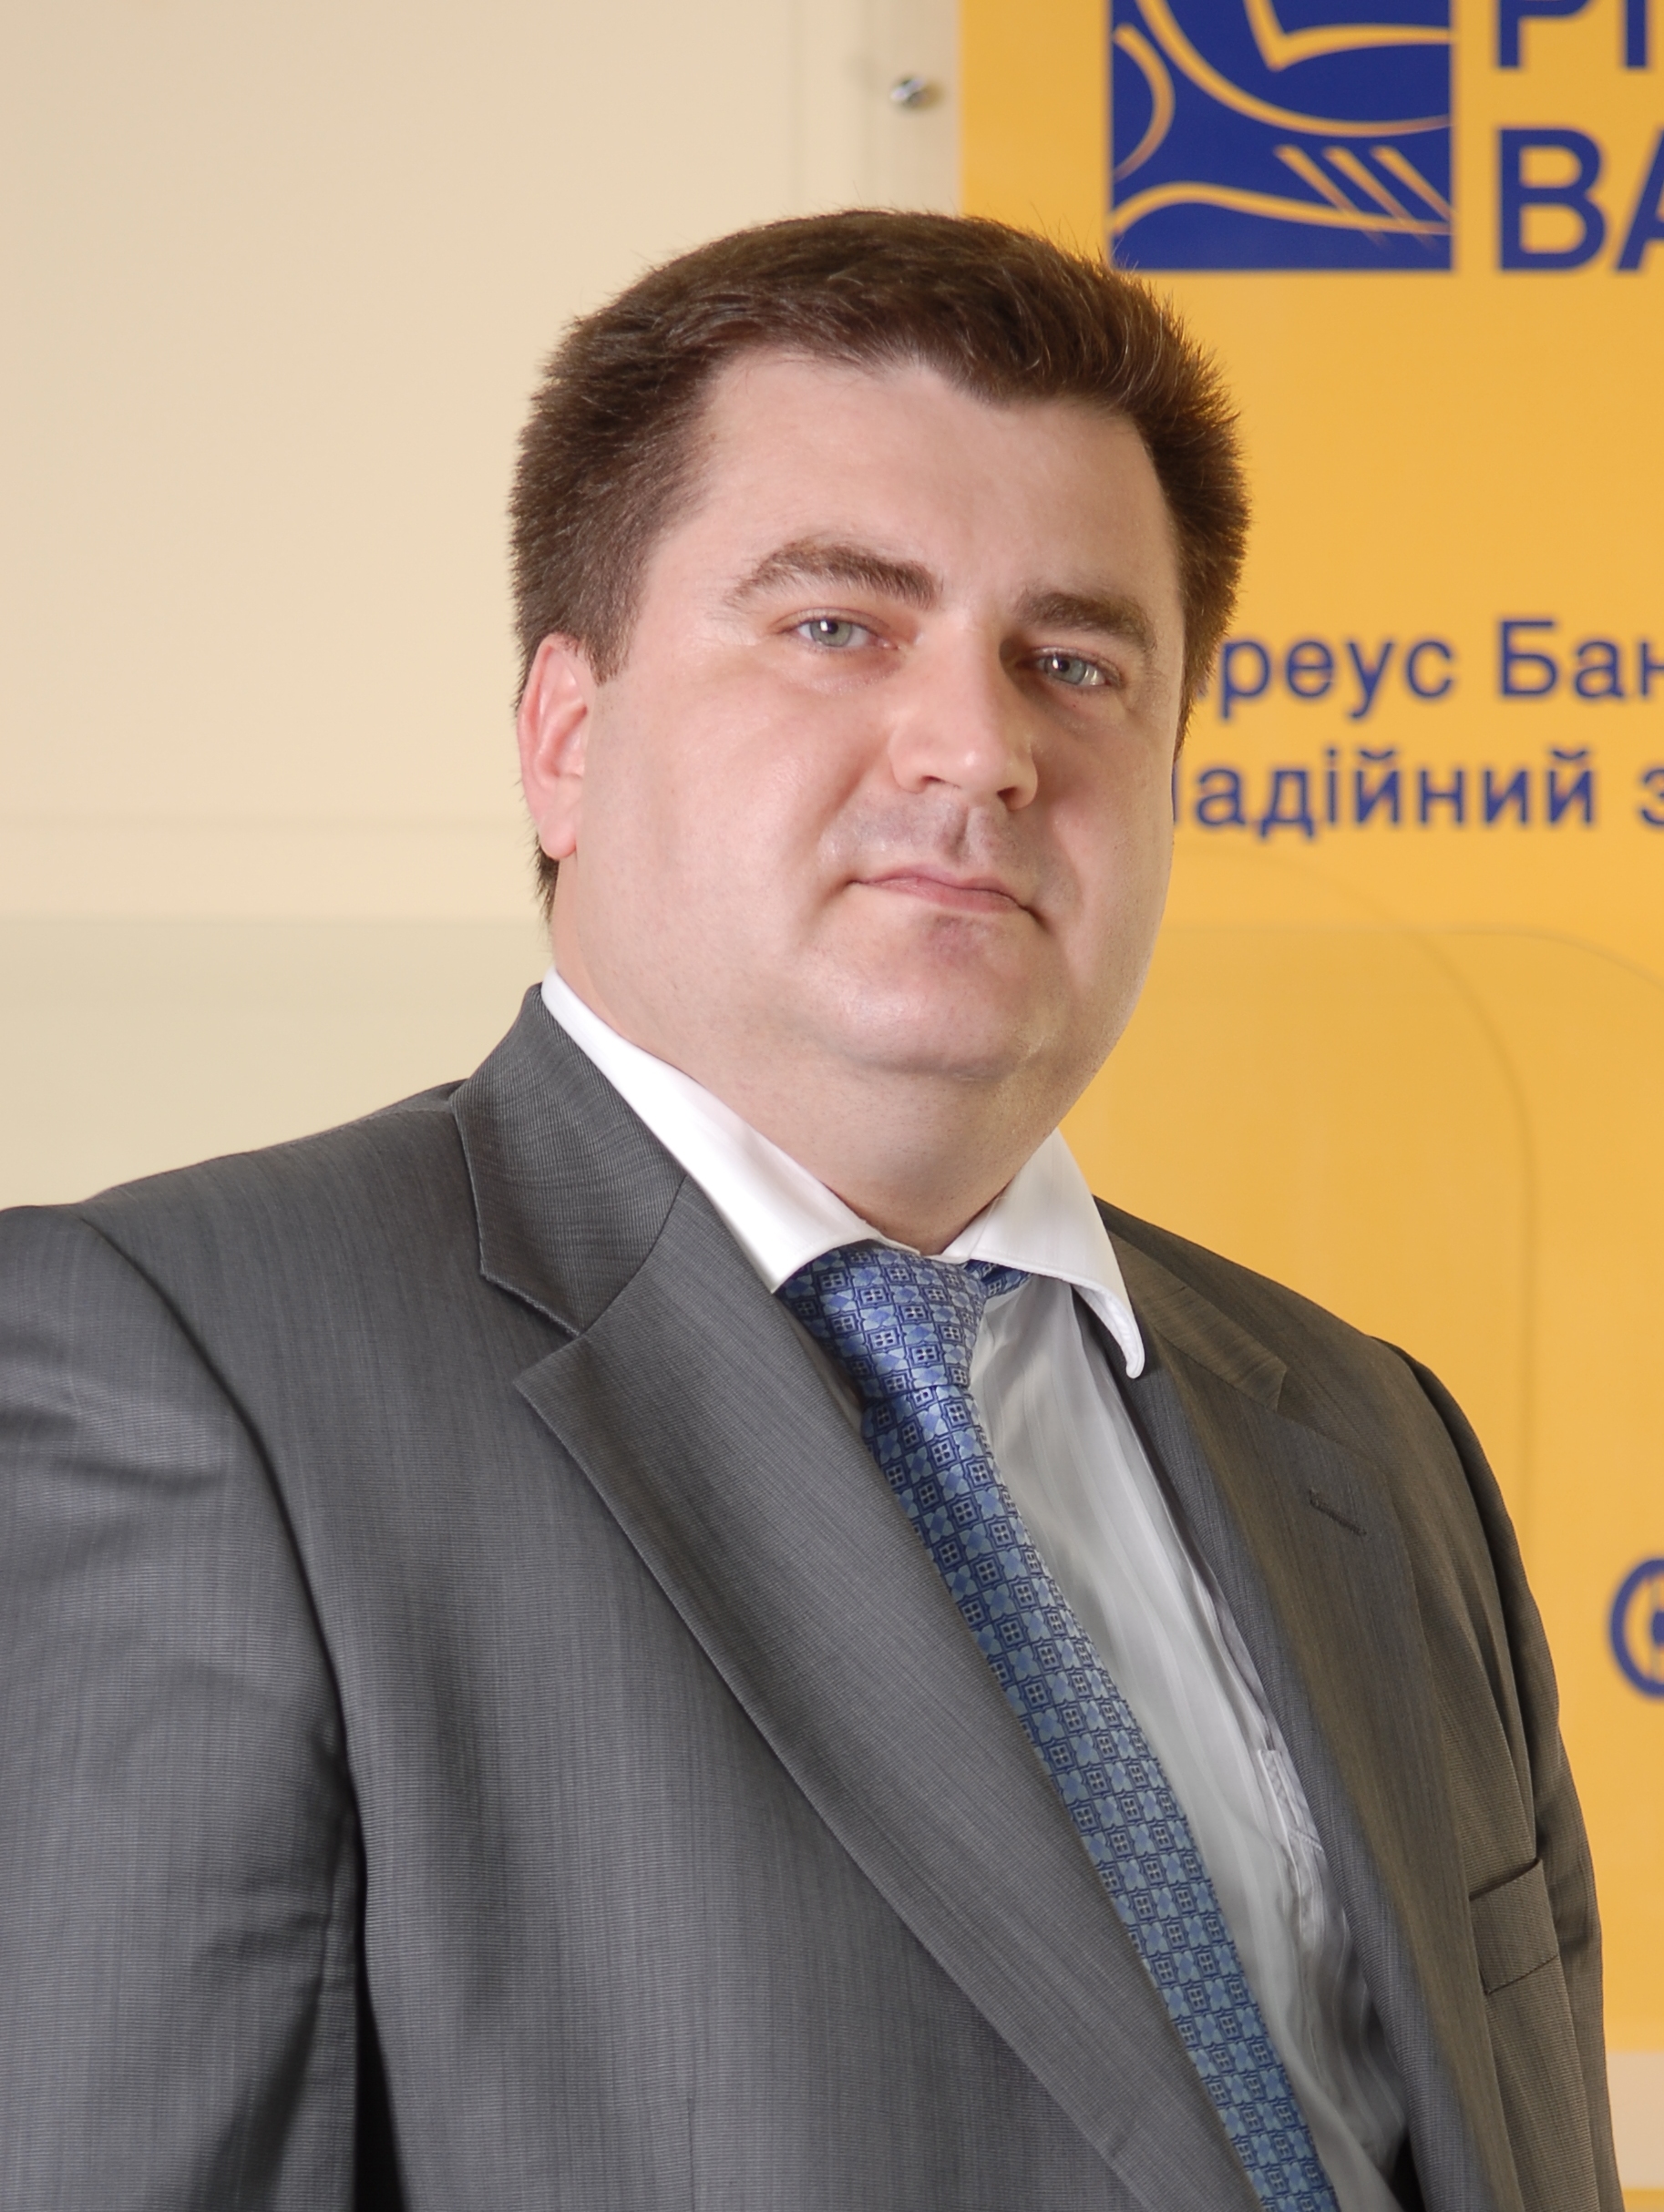 Дмитро Мусієнко, член правлінння, директор департаменту мережі філій Піреус Банку в Україні: 